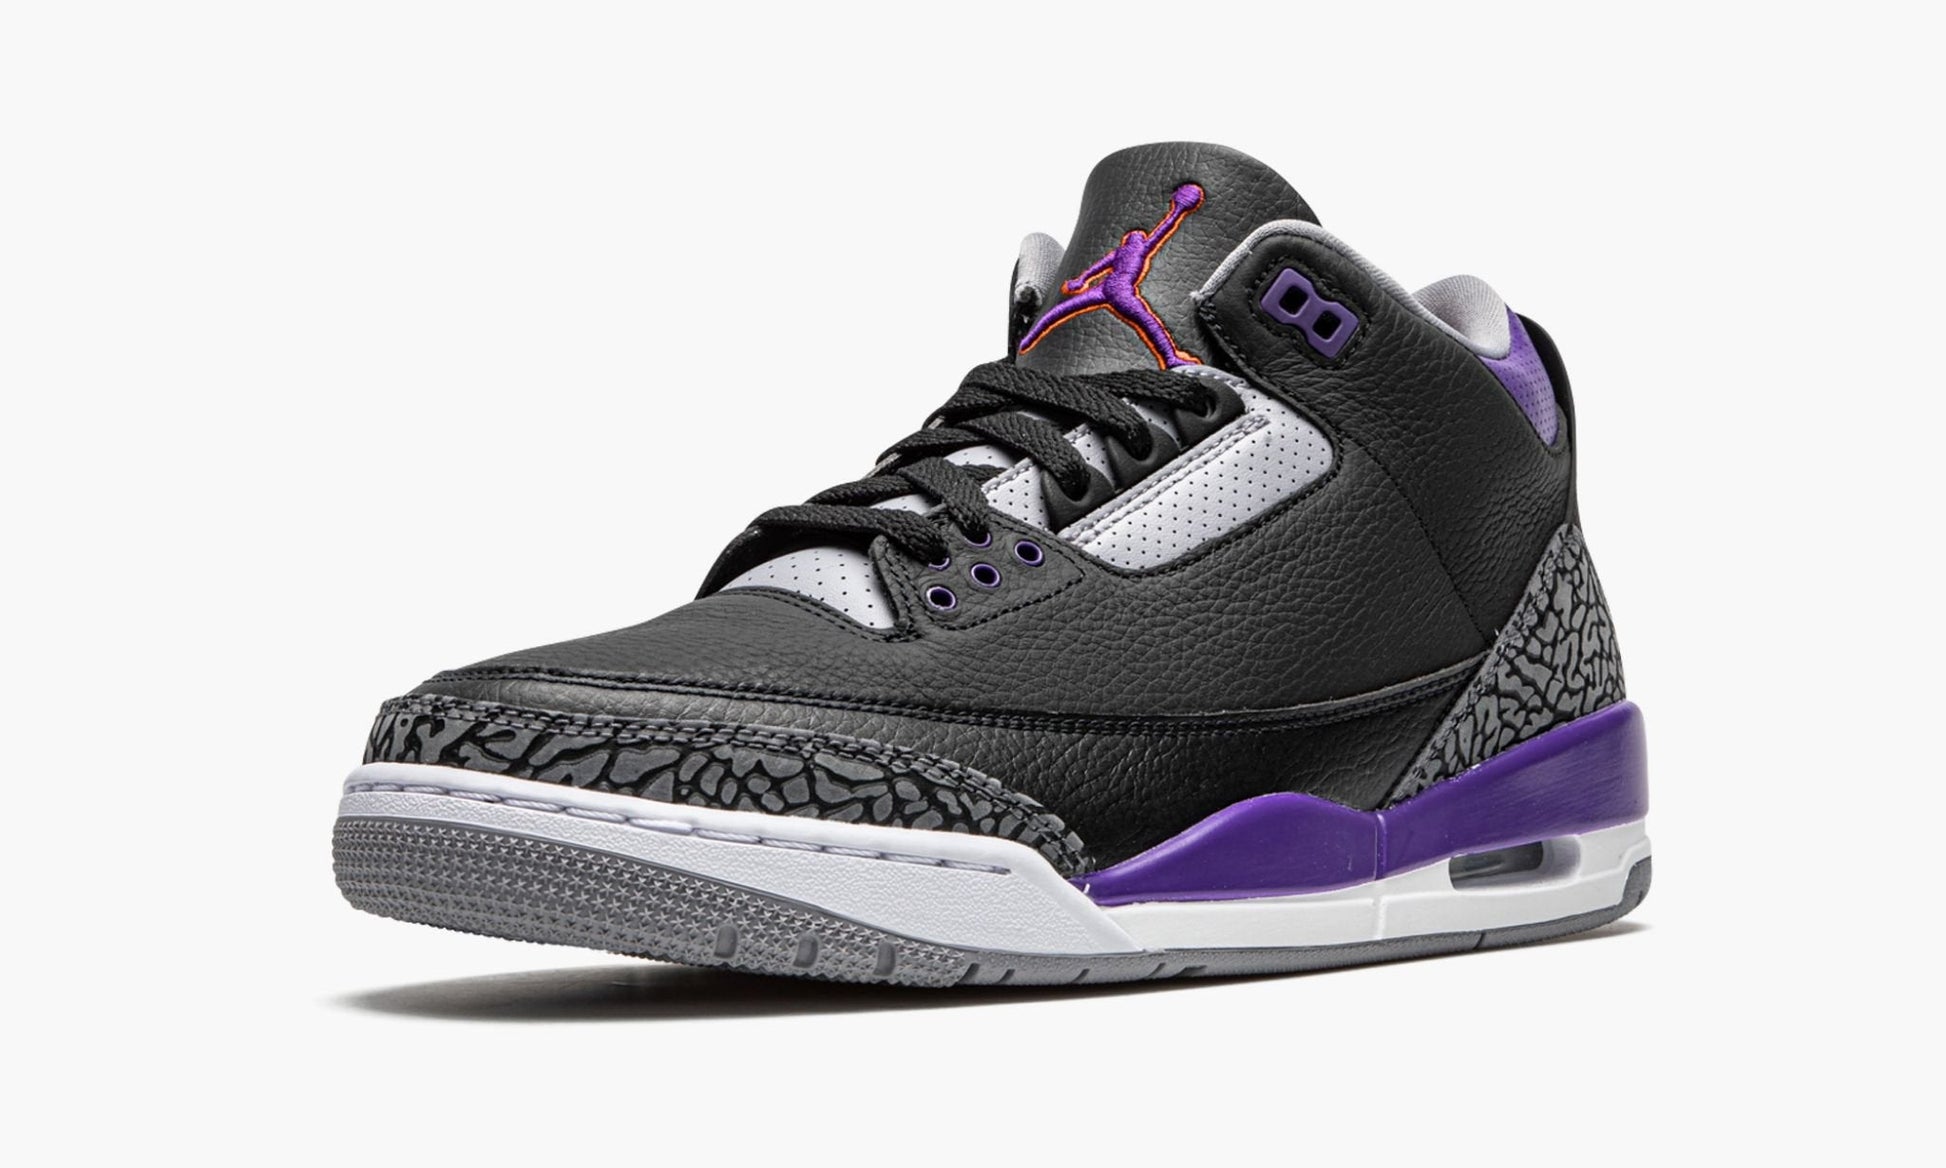 Air Jordan 3 Retro "Court Purple"